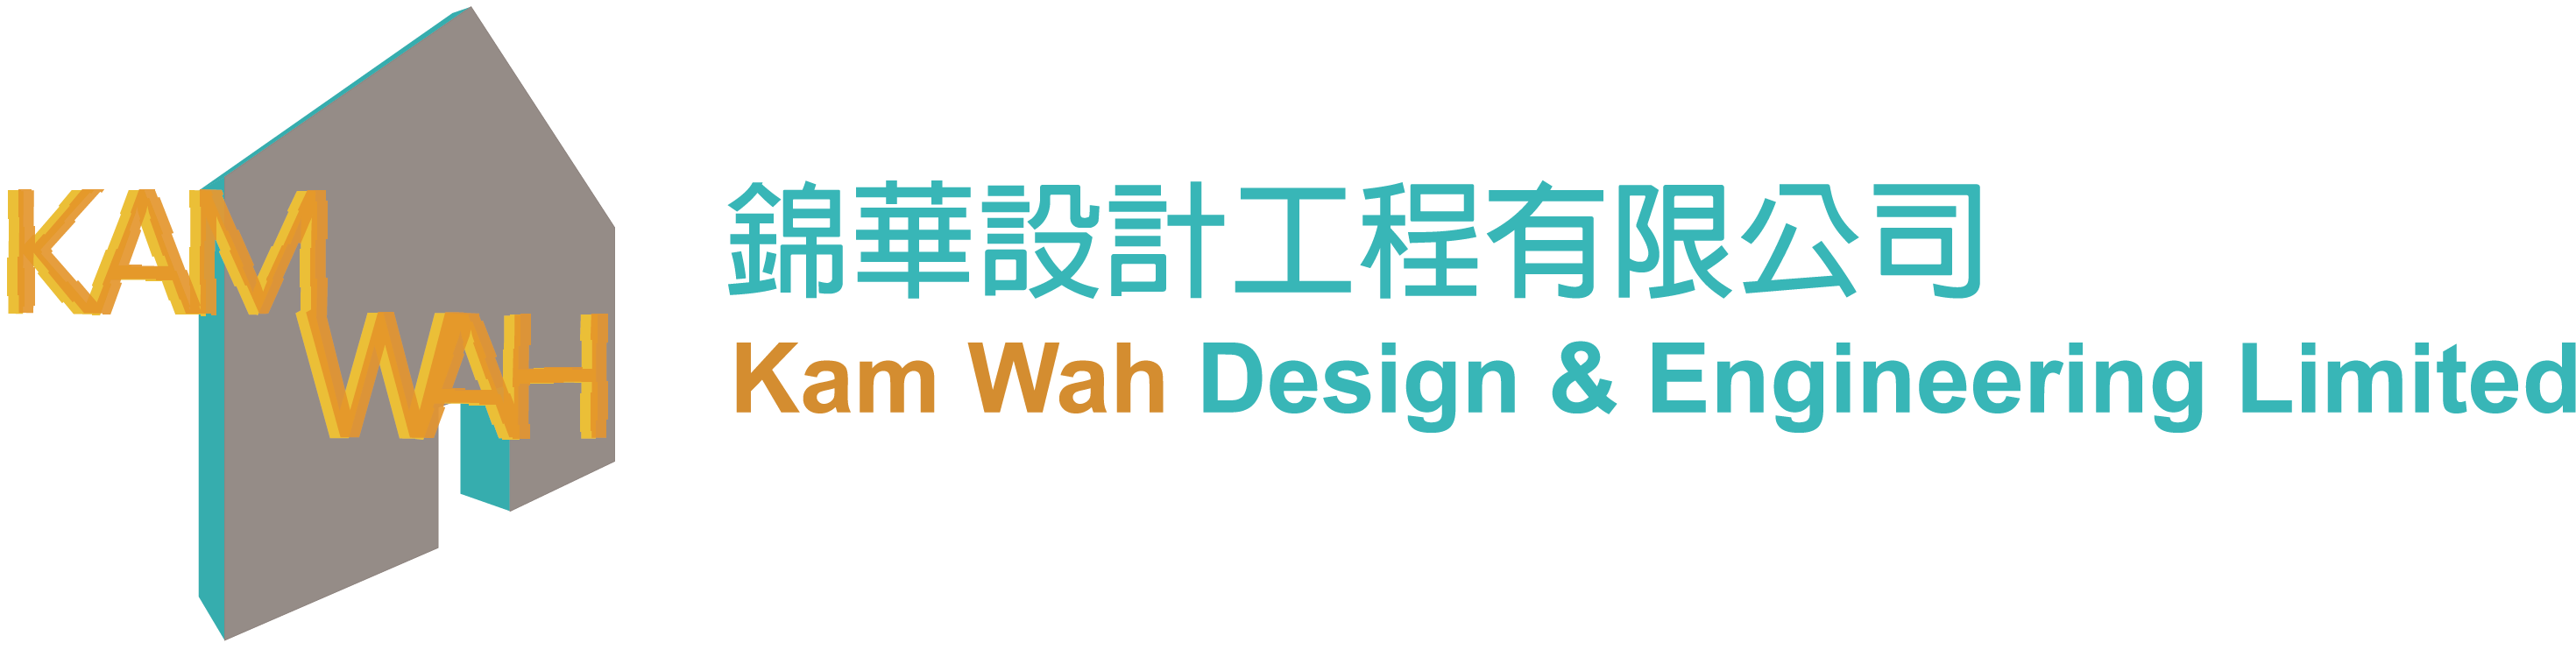 Kam Wah Design & Engineering Limited